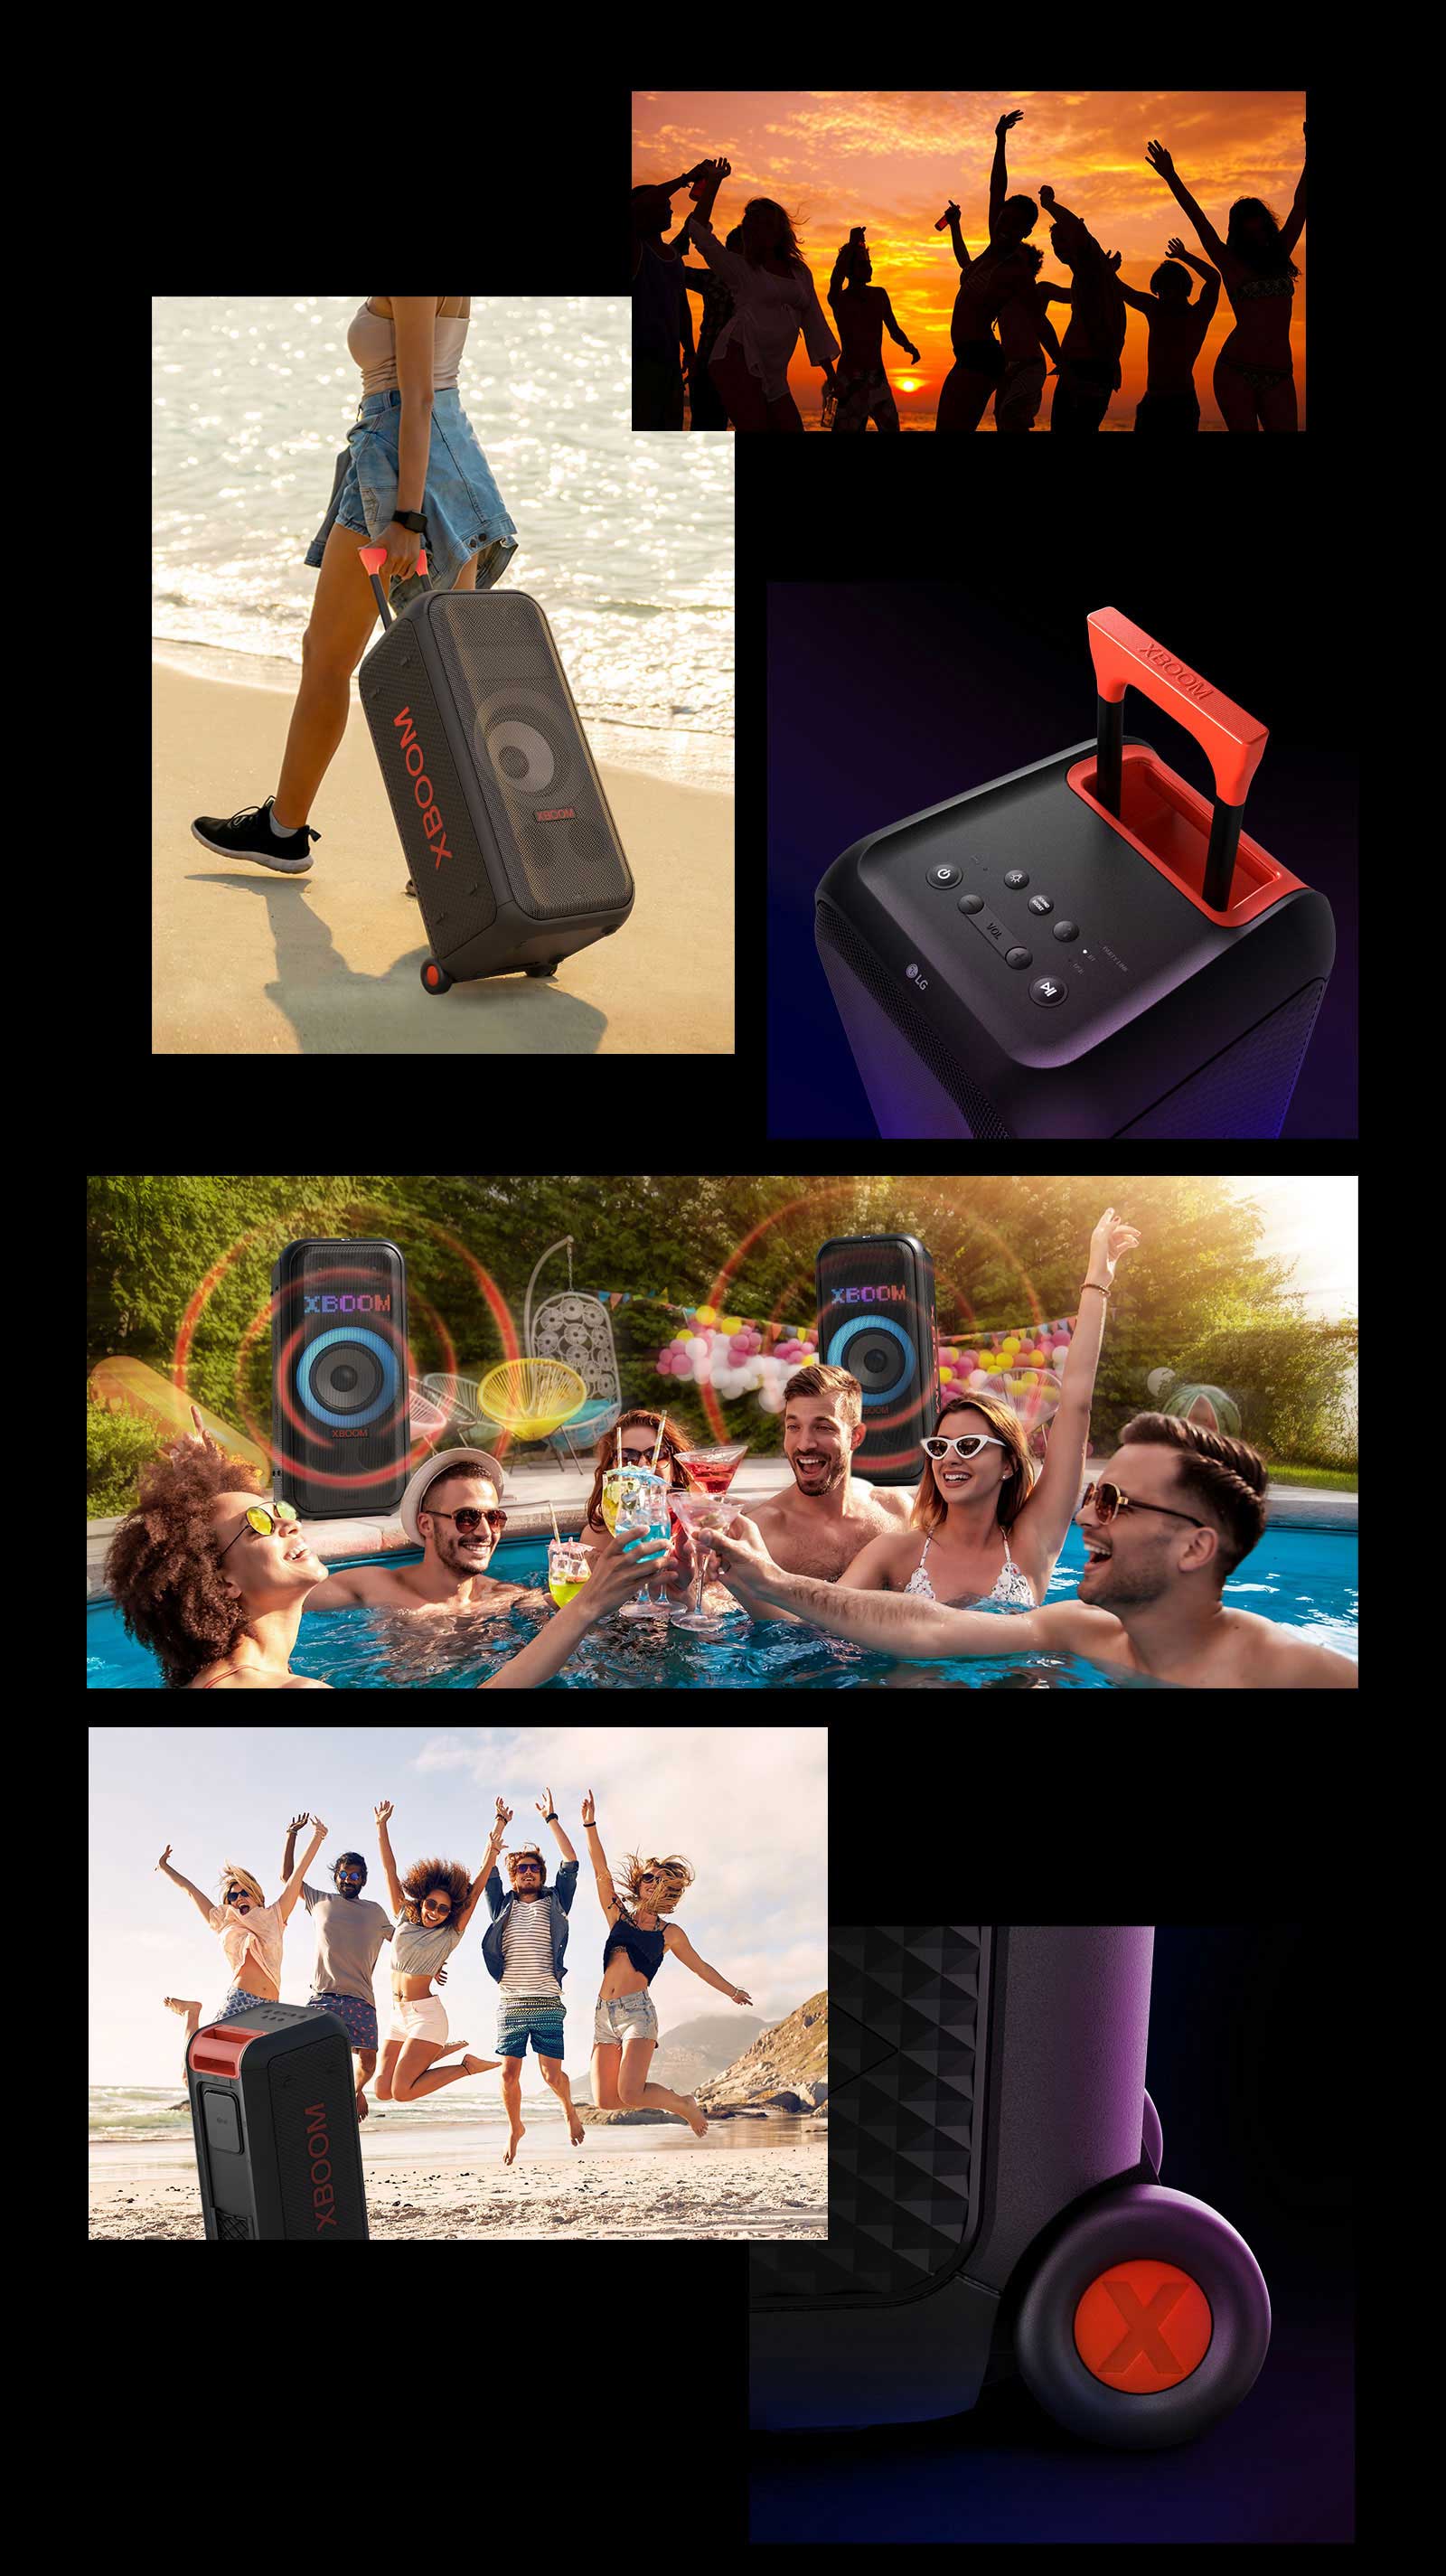 Kõlari LG XBOOM XL7S illustratsioonid. Ülevalt: inimeste siluetid; naine kannab teleskoopkäepideme ja ratastega kõlarit vaevata kaasas. Kõlar ja teleskoopkäepide pealtvaates. Inimesed naudivad basseinipidu, tagaplaanil on kaks heligraafikaga kõlarit LG XBOOM XL7S. Kõlar tagantvaates, inimesed hüppavad rannaliival, kõlariratas lähivaates.